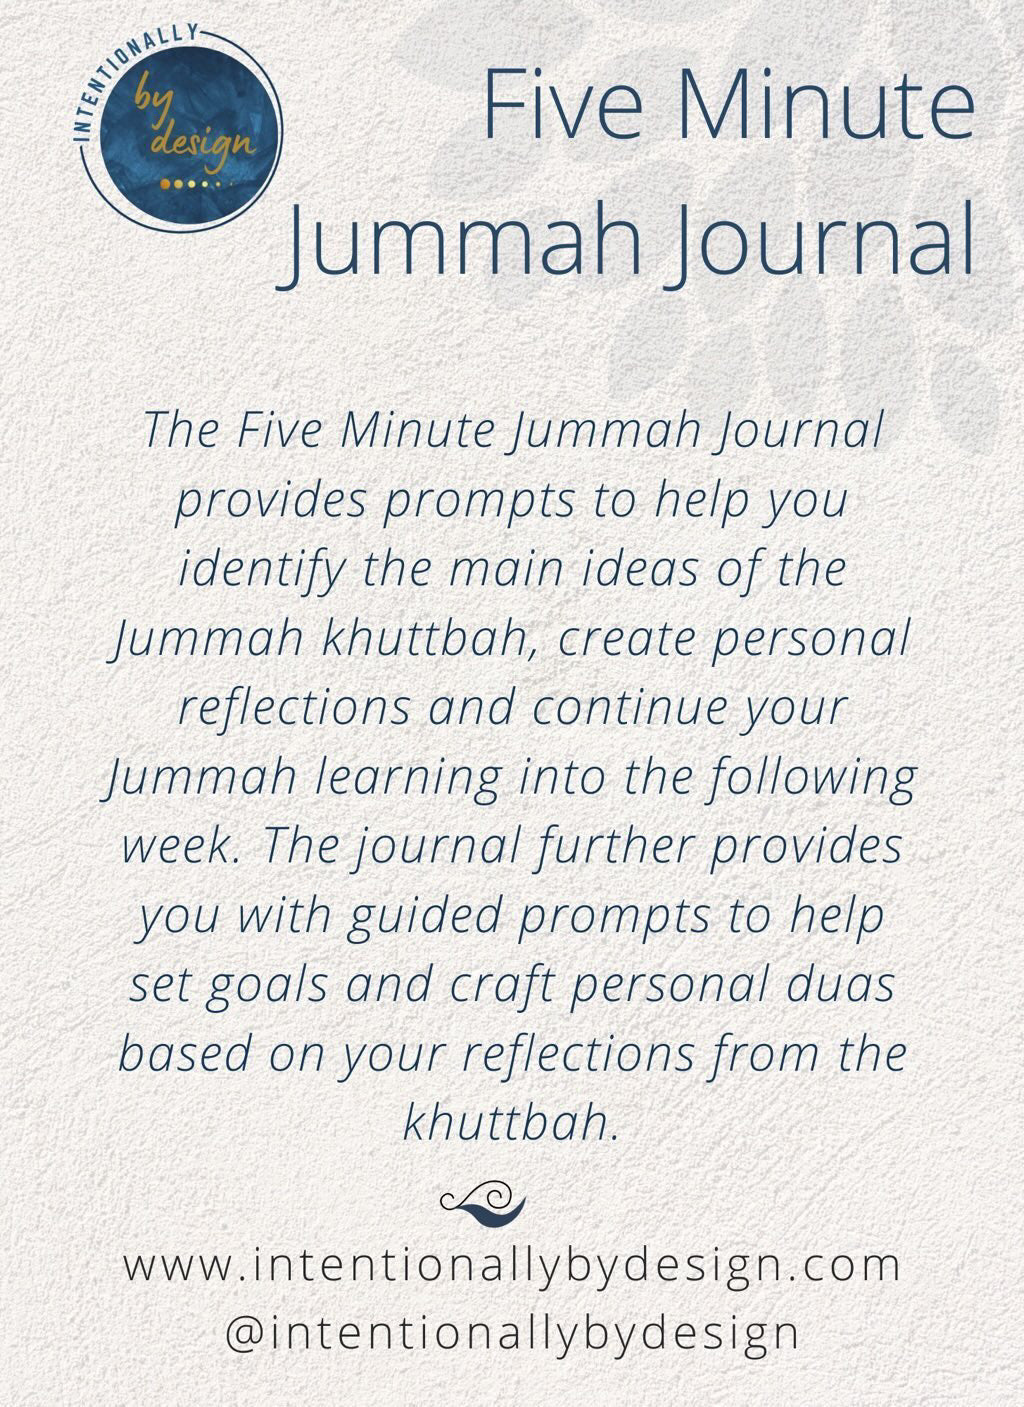 The Five Minute Jummah Journal